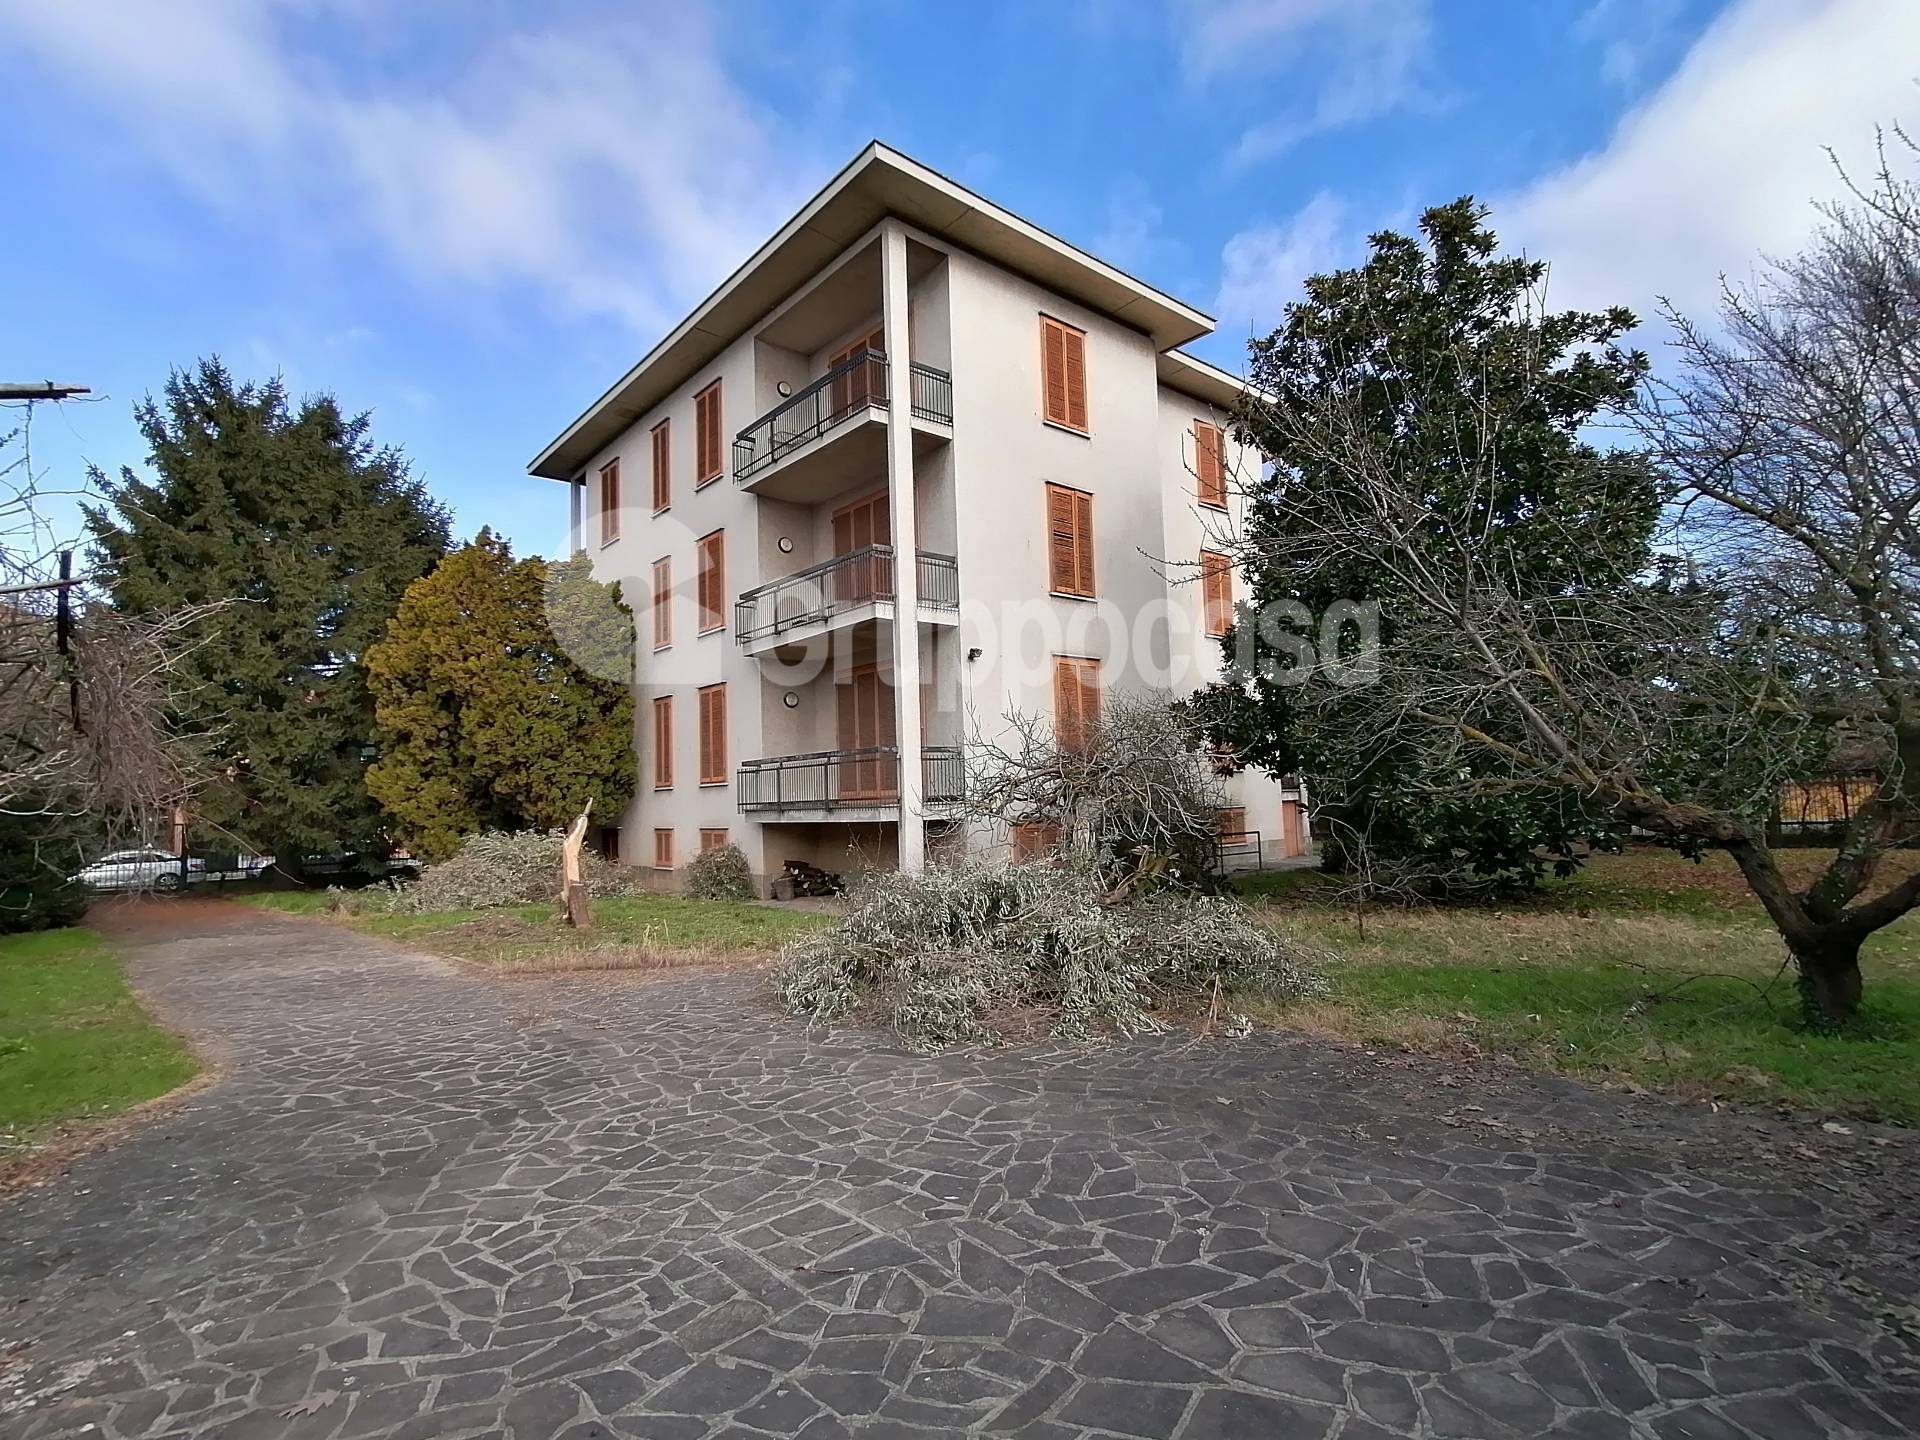 Villa in vendita a Marcallo con Casone, 12 locali, prezzo € 800.000 | PortaleAgenzieImmobiliari.it